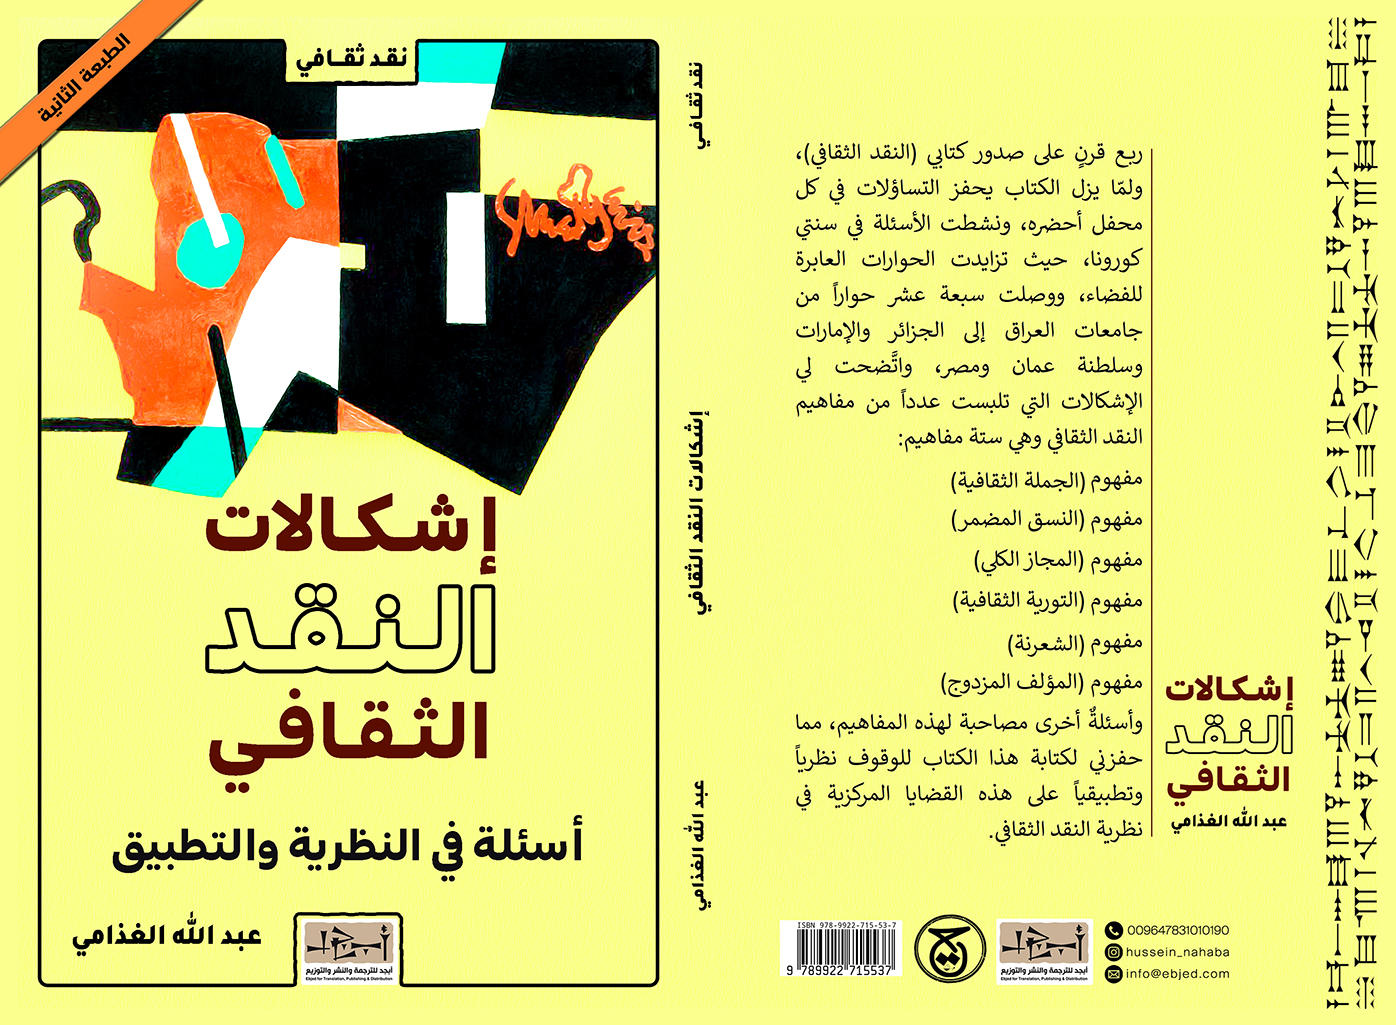 الكتاب: إشكالات النقد الثقافي أسئلةٌ في النظرية والتطبيق تأليف: د. عبد الله الغذامي التصنيف: نقد ثقافي